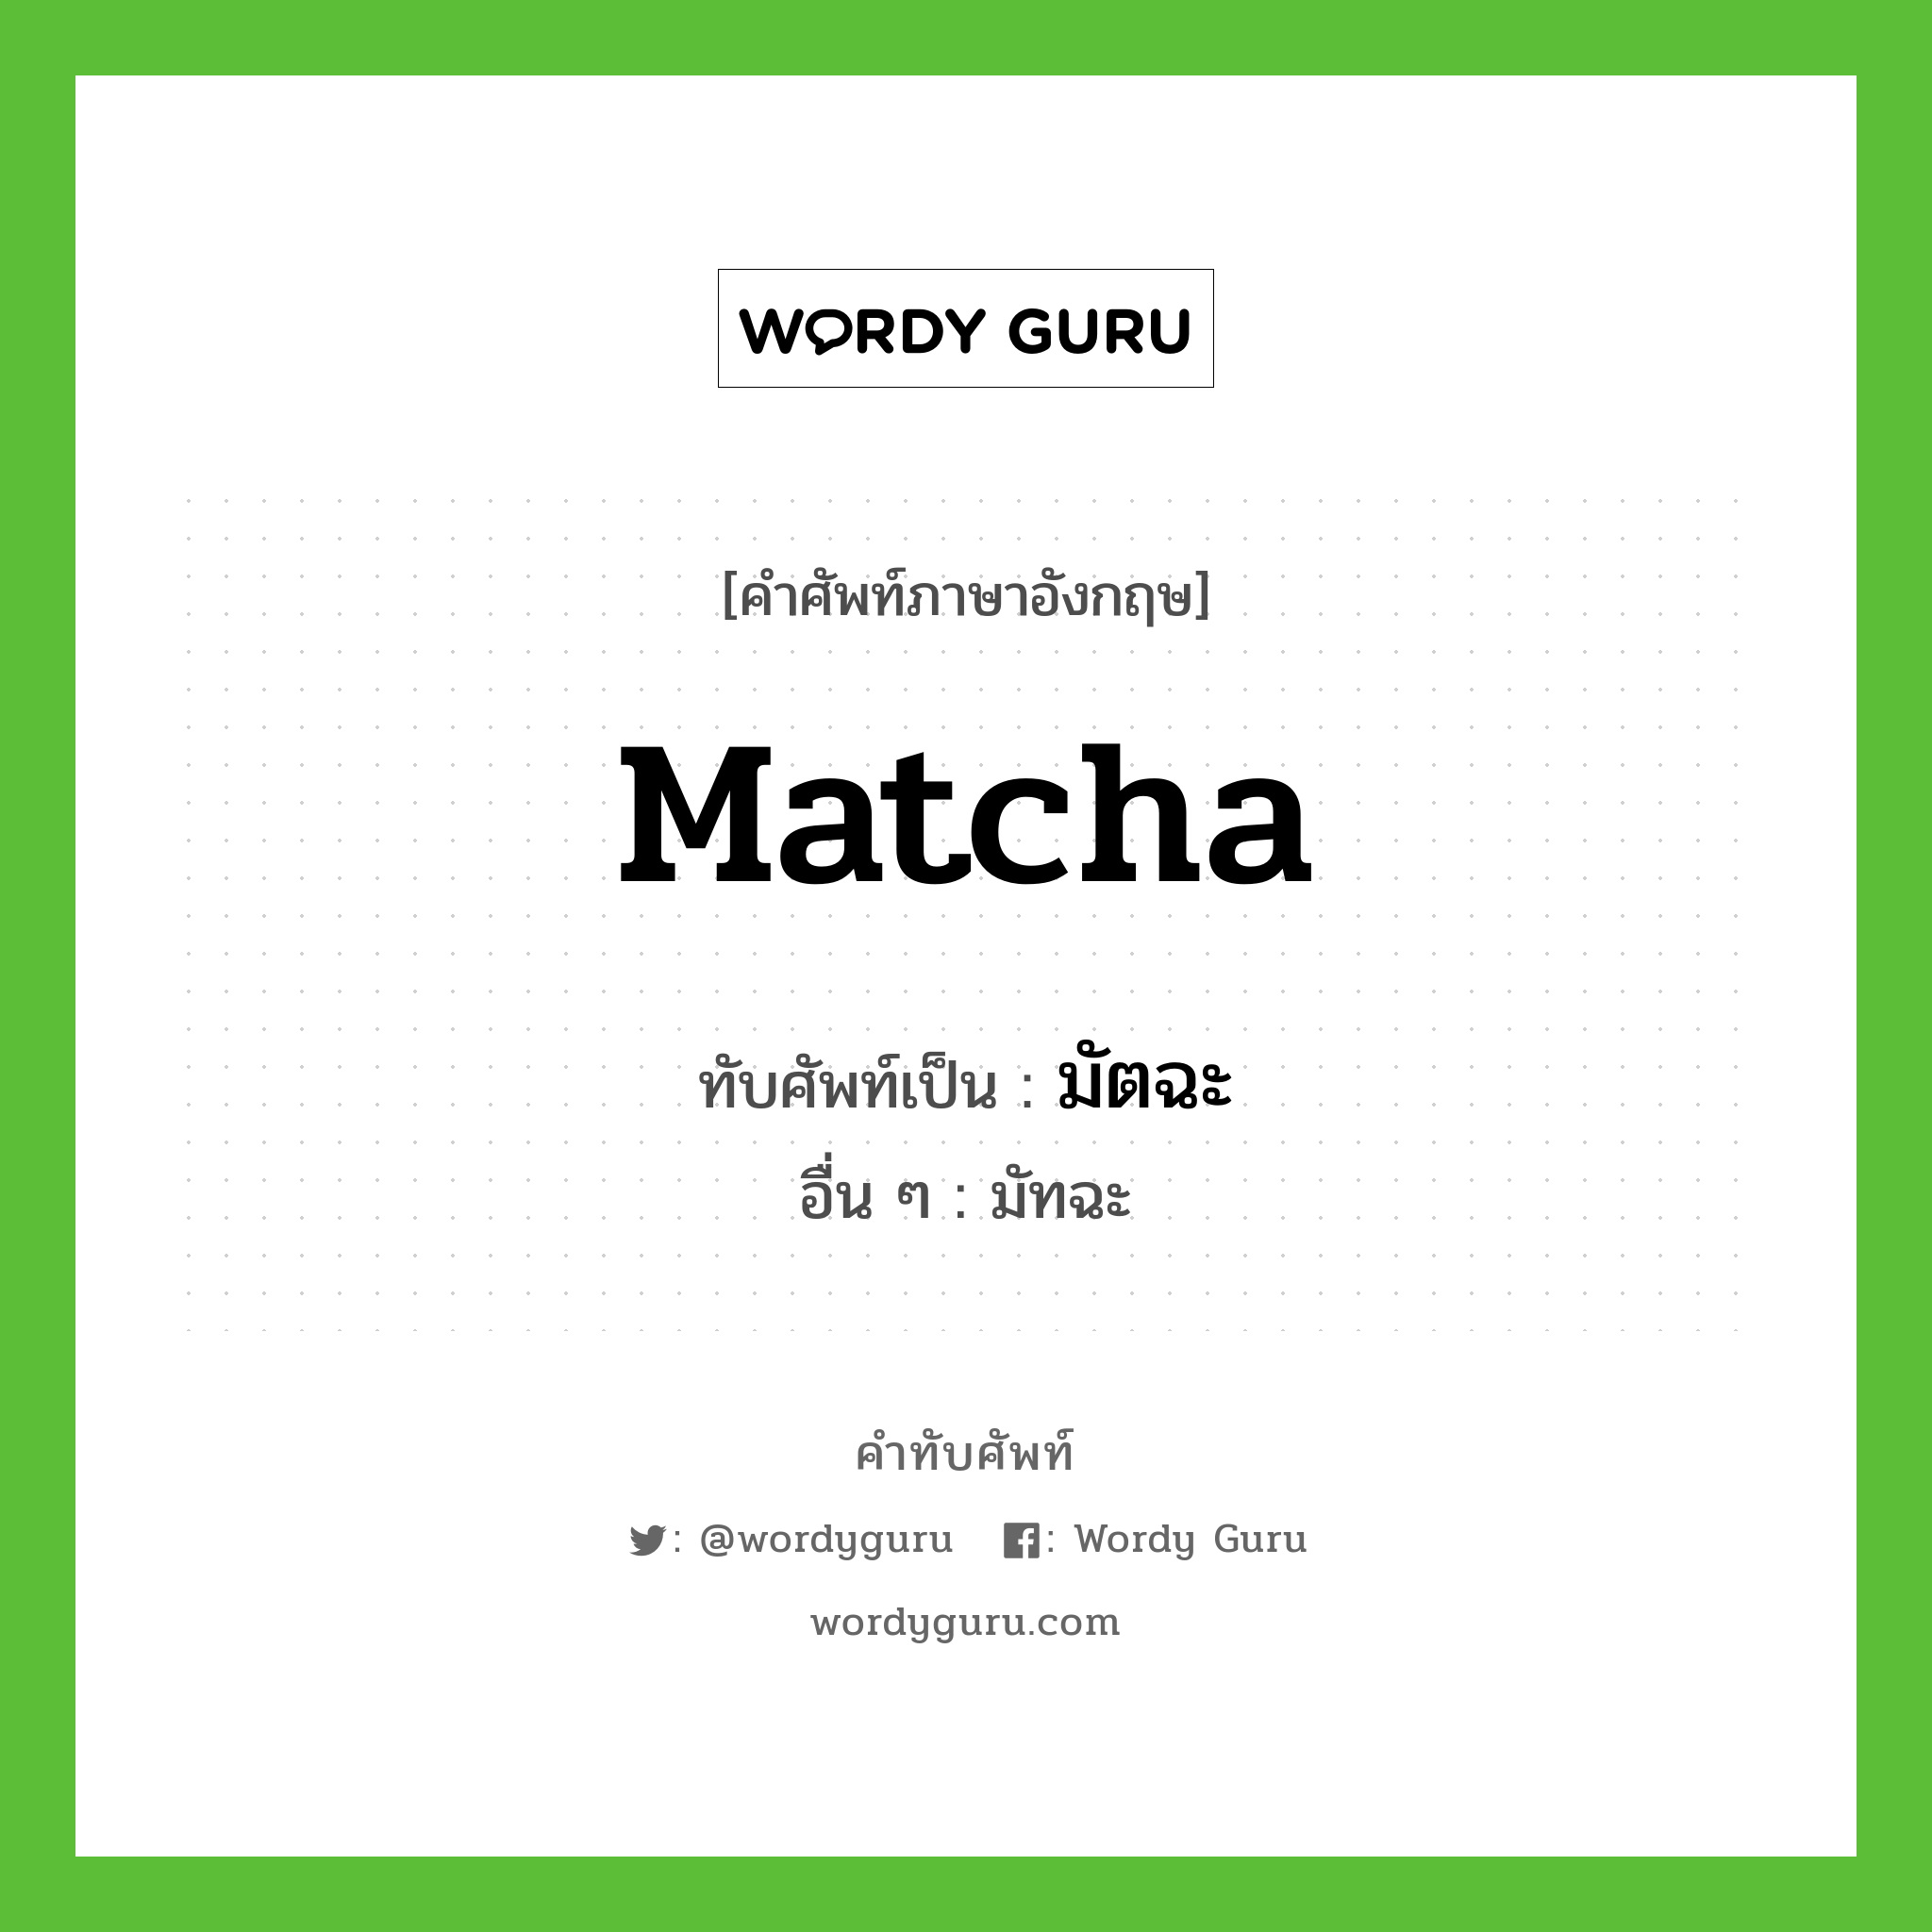 Matcha เขียนเป็นคำไทยว่าอะไร?, คำศัพท์ภาษาอังกฤษ Matcha ทับศัพท์เป็น มัตฉะ อื่น ๆ มัทฉะ